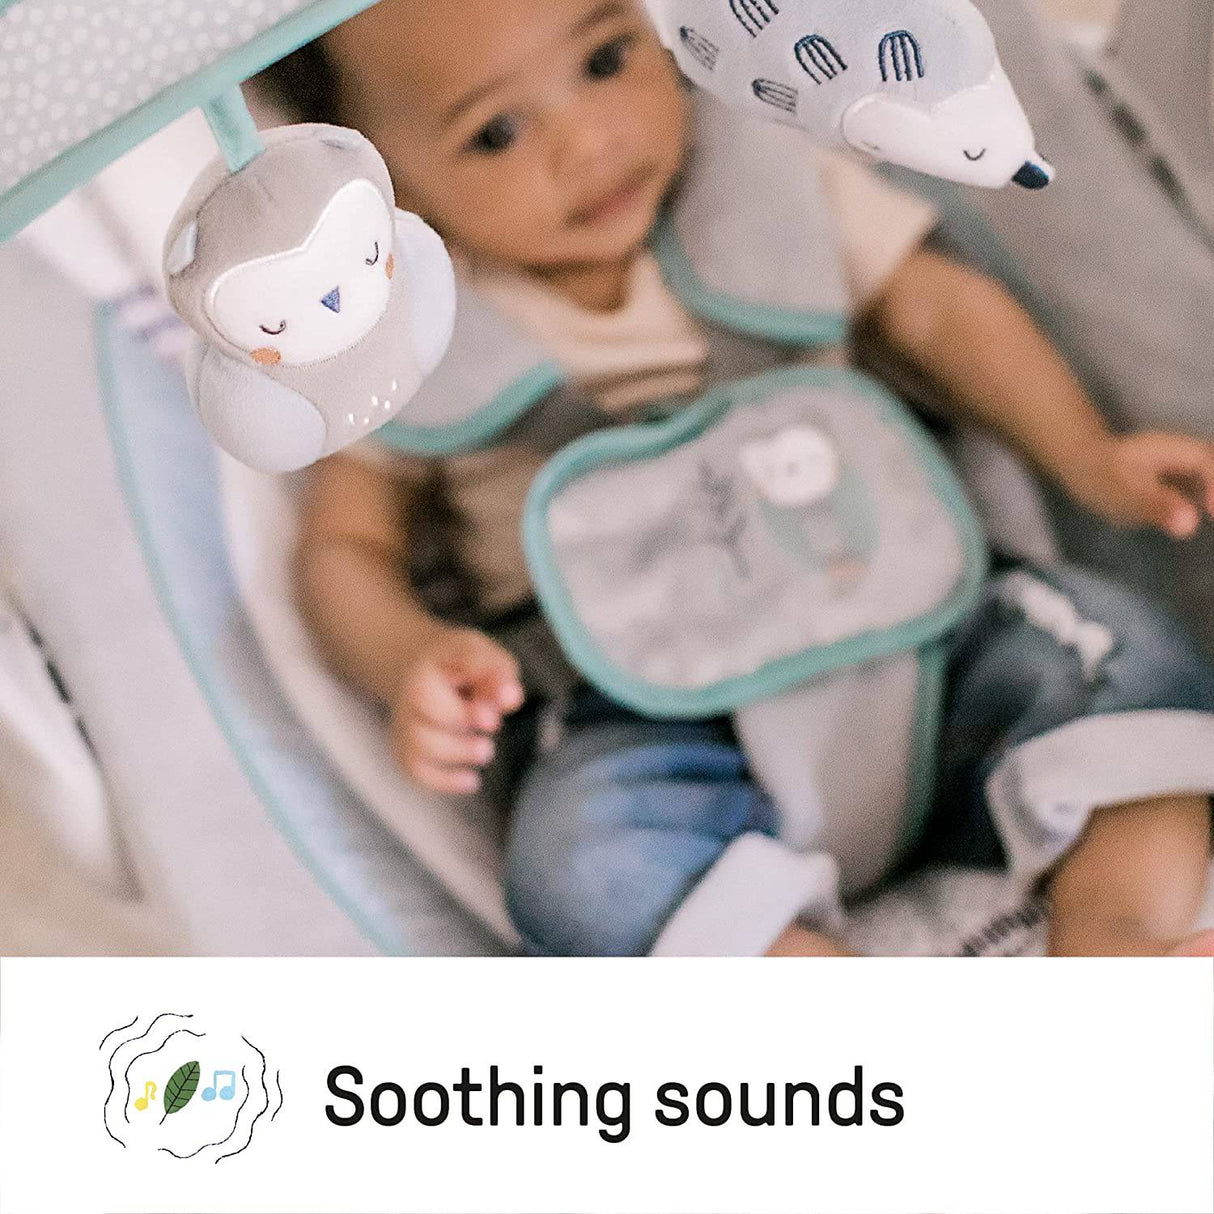 Ingenuity Columpio portátil ligero y compacto para bebé con música, sonidos de la naturaleza y tecnología de ahorro de batería - Abernathy, 0-9 meses - DIGVICE MX